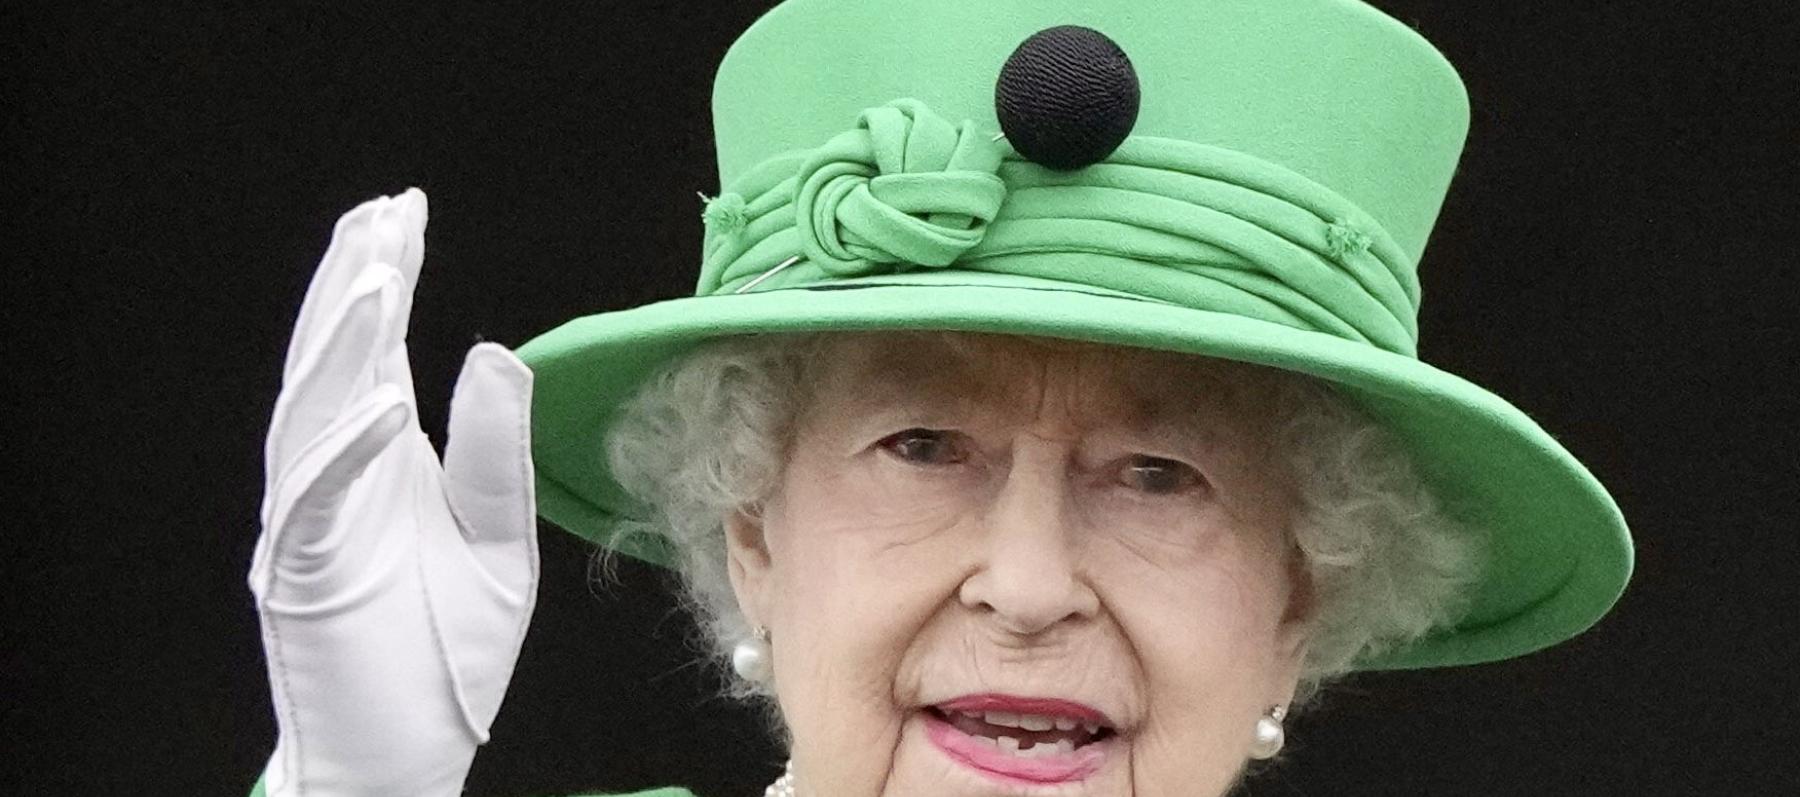 الملكة إليزابيث - صورة من حساب @The Royal Family على تويتر